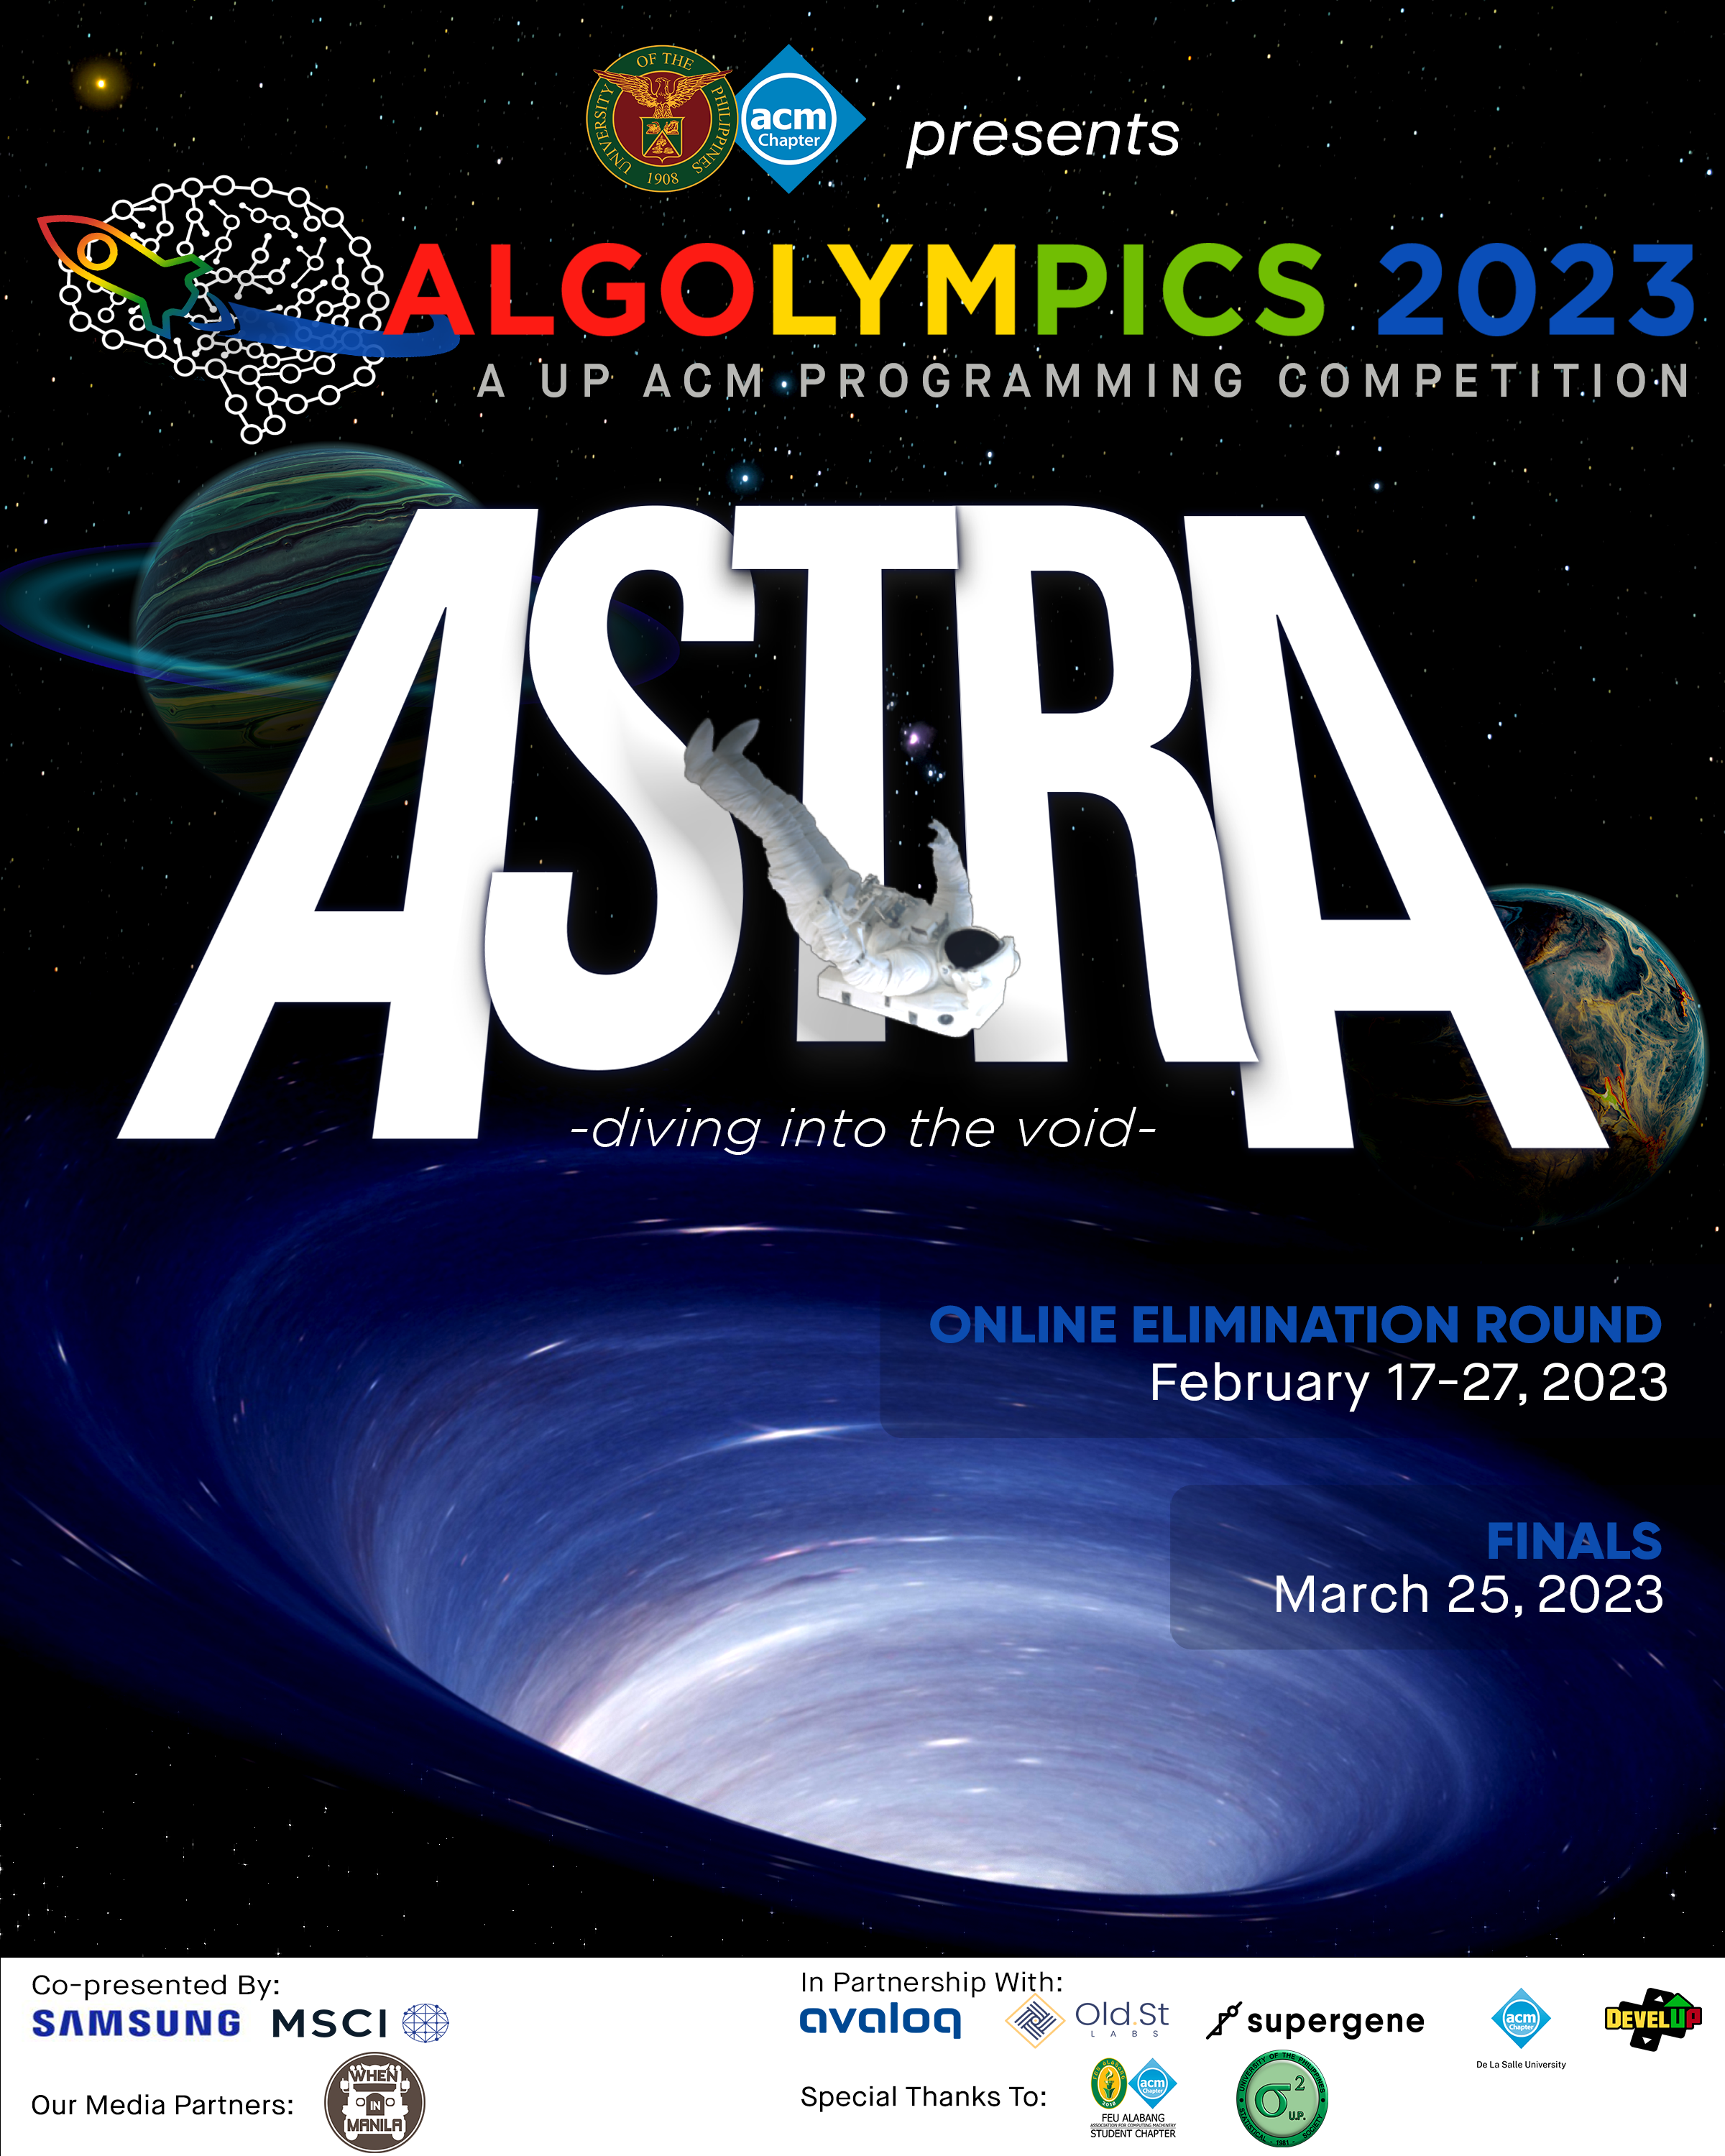 UP ACM Algolympics 2023 Astra